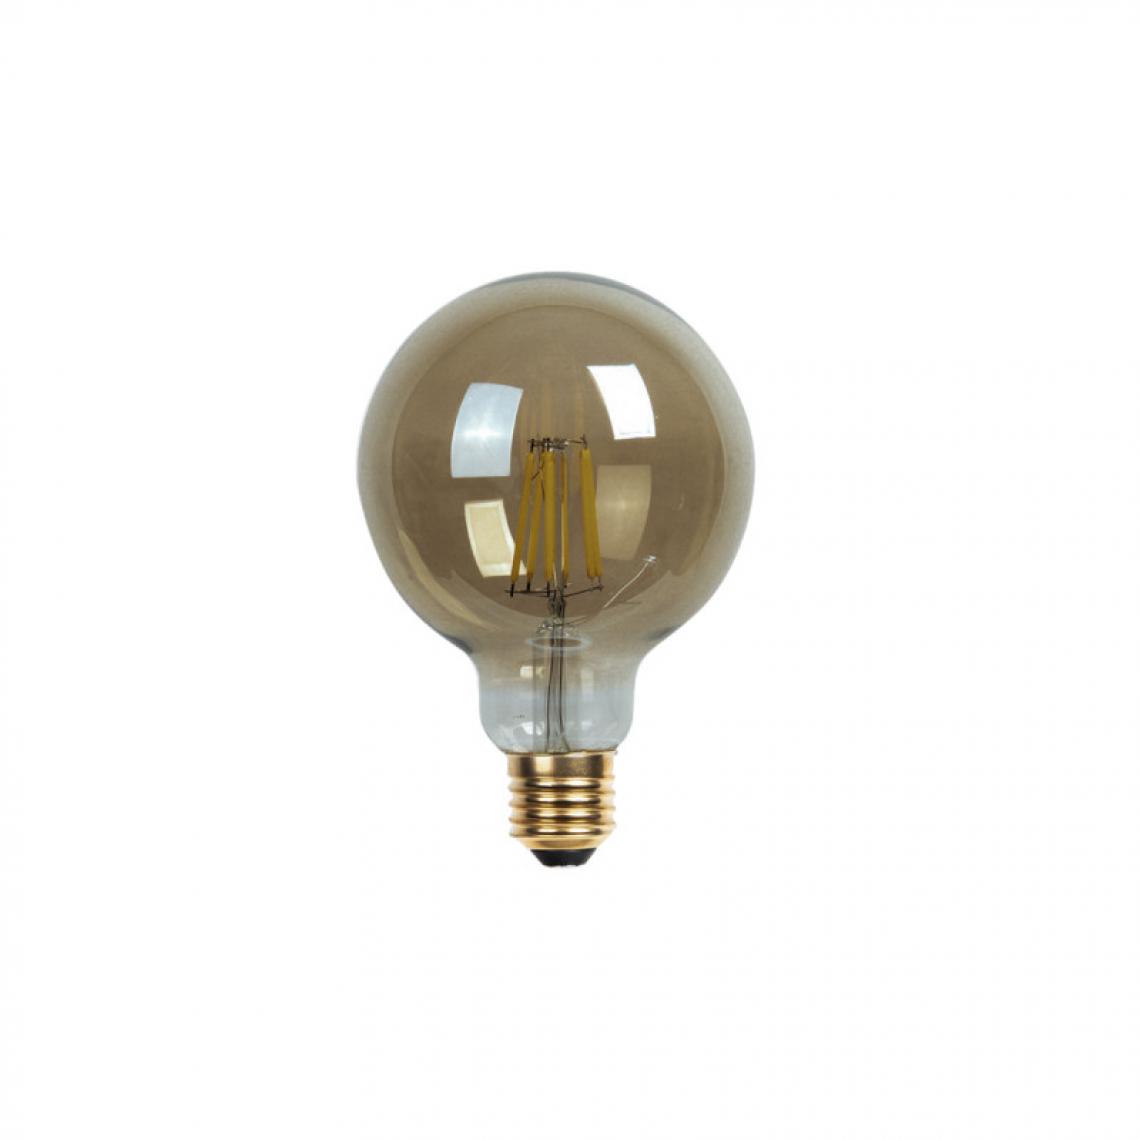 Xxcell - Ampoule LED globe fumée XXCELL - 6 W - 350 lumens - 2700 K - E27 - Ampoules LED